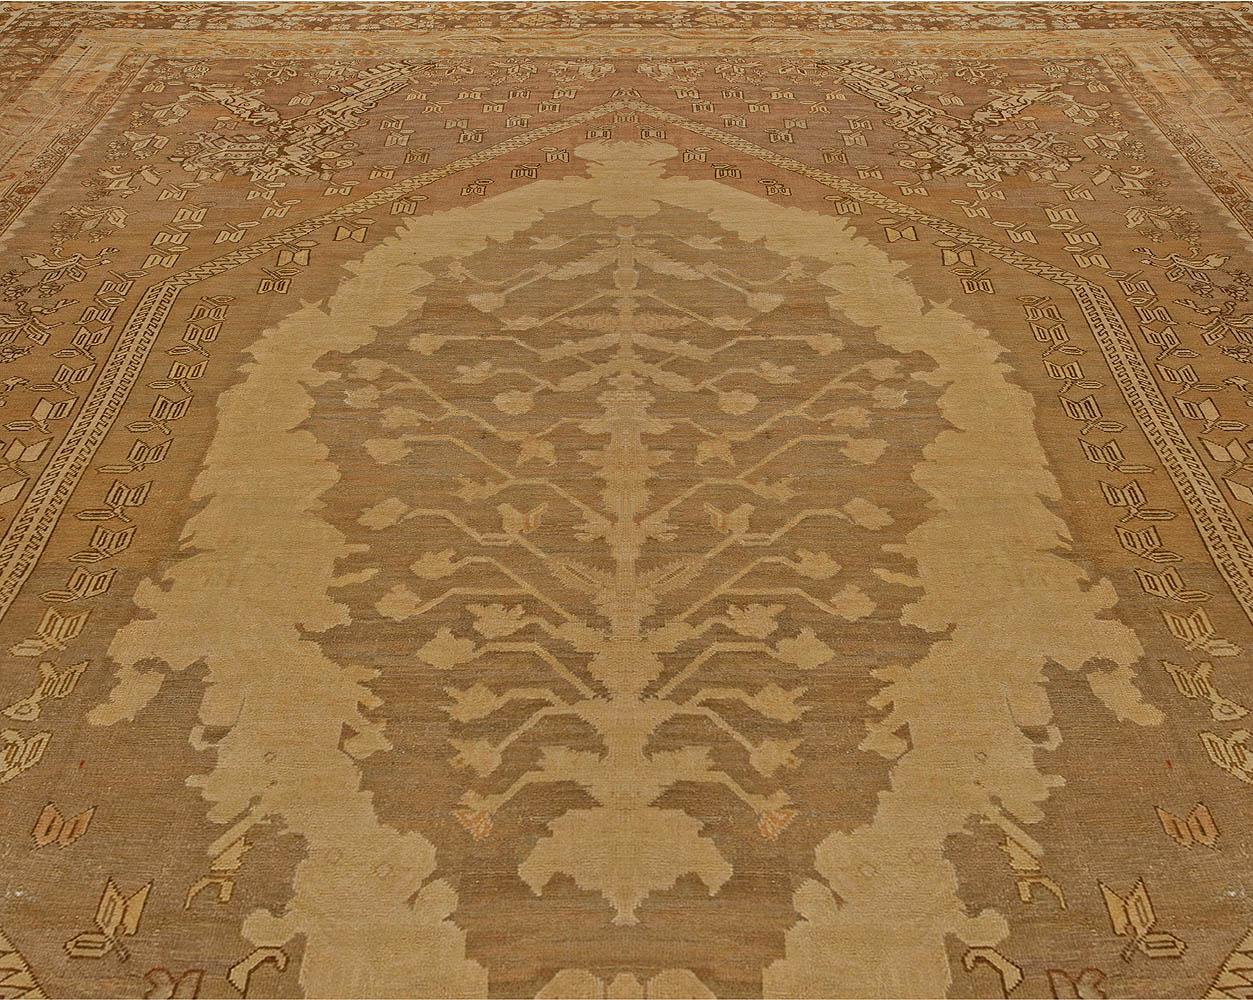 Oversized antique Turkish Ghiordes brown handmade wool rug
Size: 17'6